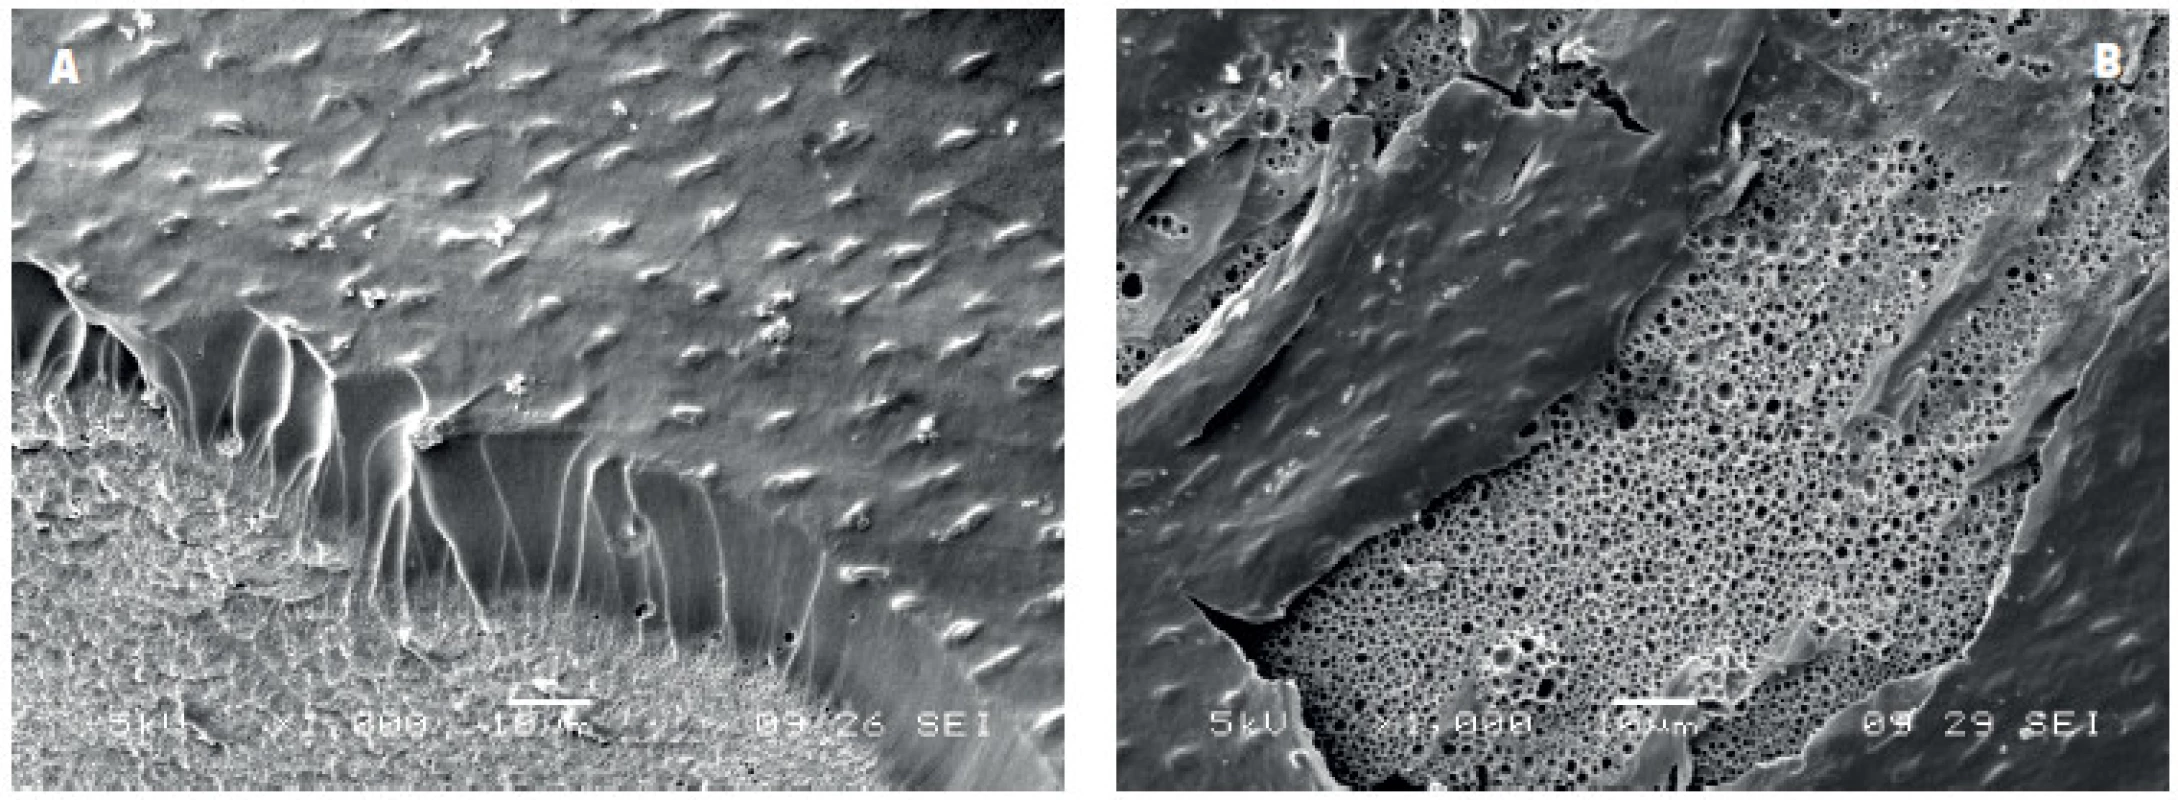 Spodní část kompozitní výplně bondované adhezivem ADP po odstranění skloviny a dentinu demineralizací a deproteinizací pomocí HCl a NaOCl: A) vrstva ADP s nedokonale vytvořenými pryskyřičnými tagy a drobnými bublinkami na rozhraní mezi kompozitním materiálem a vrstvou adheziva, B) rozsáhlé oblasti porozity na spodině vrstvy adheziva v kontaktu s kompozitním materiálem, zvětšení 1000x, SEM